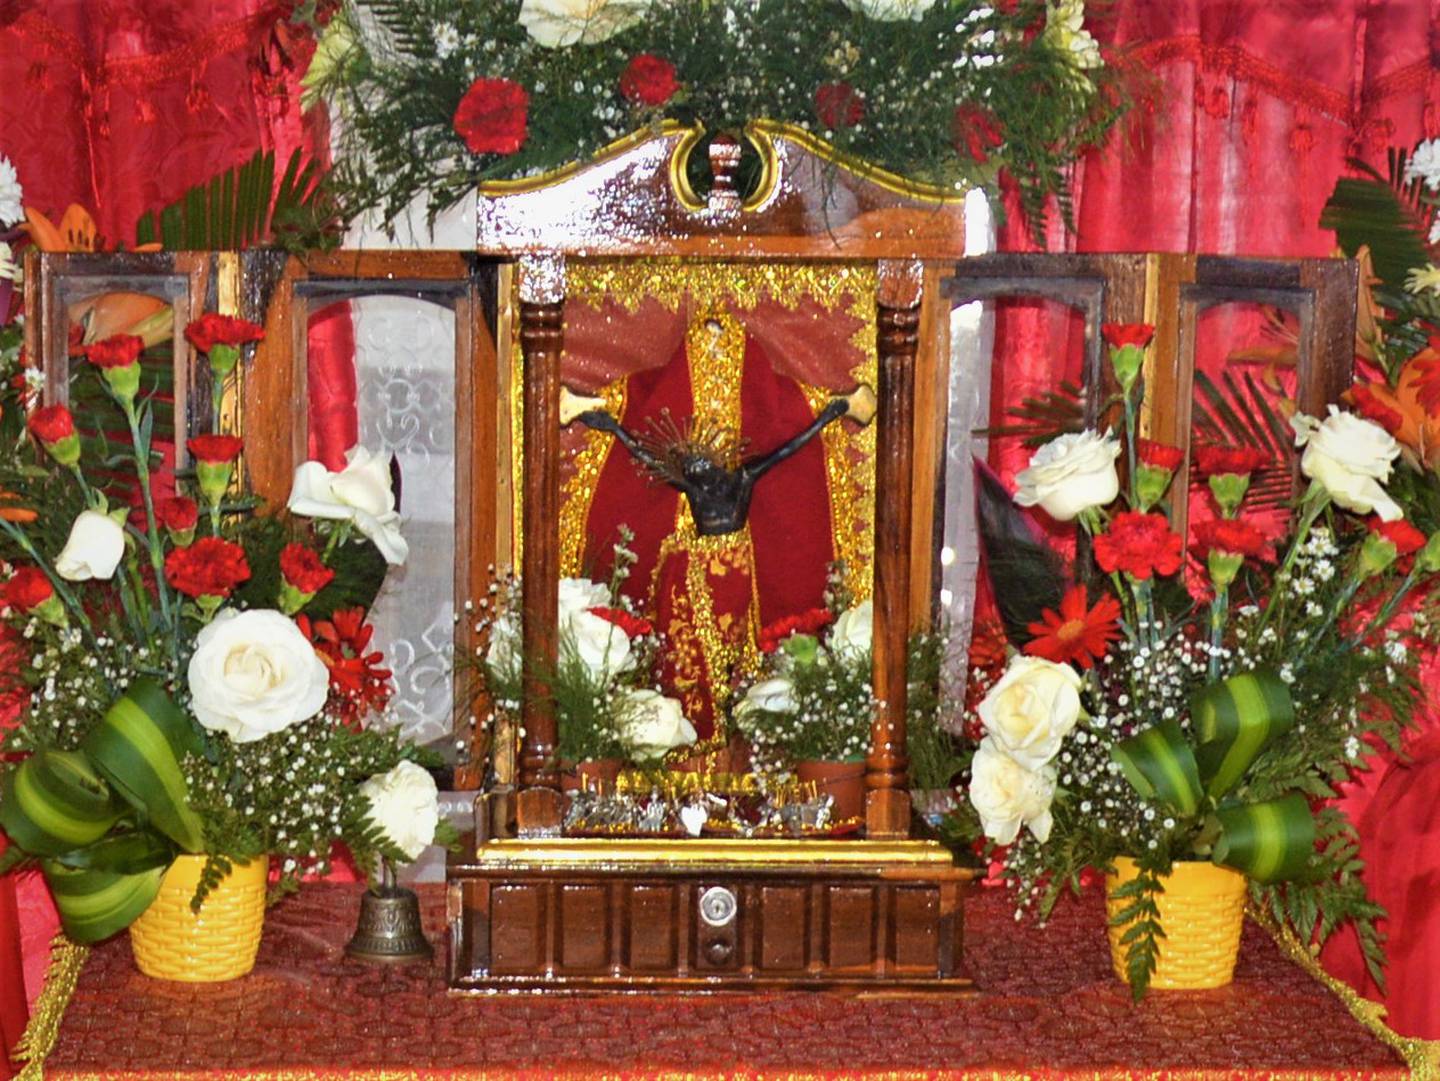 Este seis de enero es el segundo día de la novena que el Santuario Nacional Santo Cristo de Esquipulas, en Santa Cruz, Guanacaste, le celebra a su santo patrono.